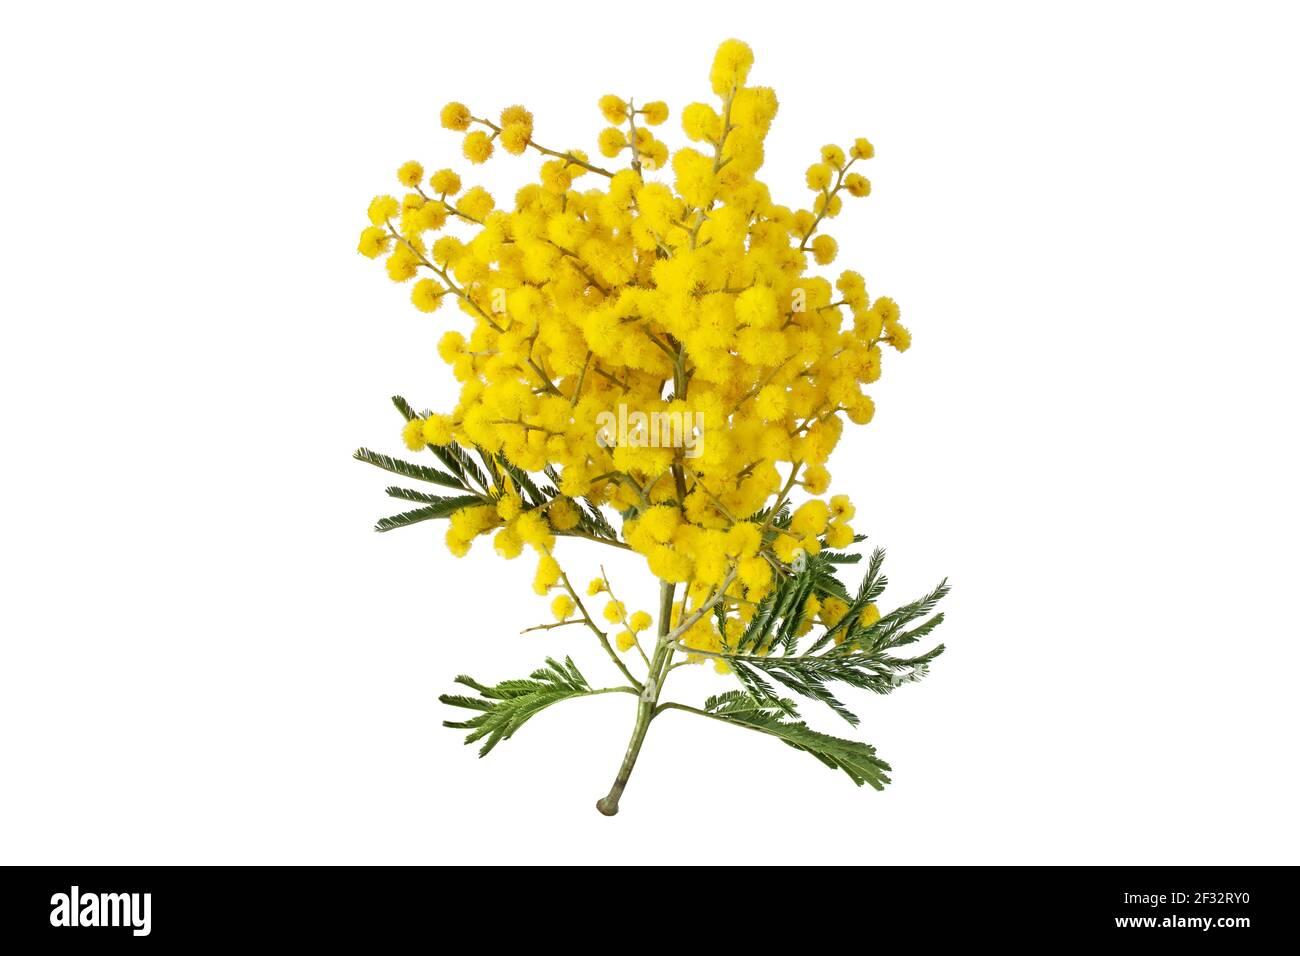 Branche d'arbre larvite isolée sur blanc. Feuilles et billes molletonnées jaune en acacia dealbata. Fleurs de printemps Mimosa. Banque D'Images